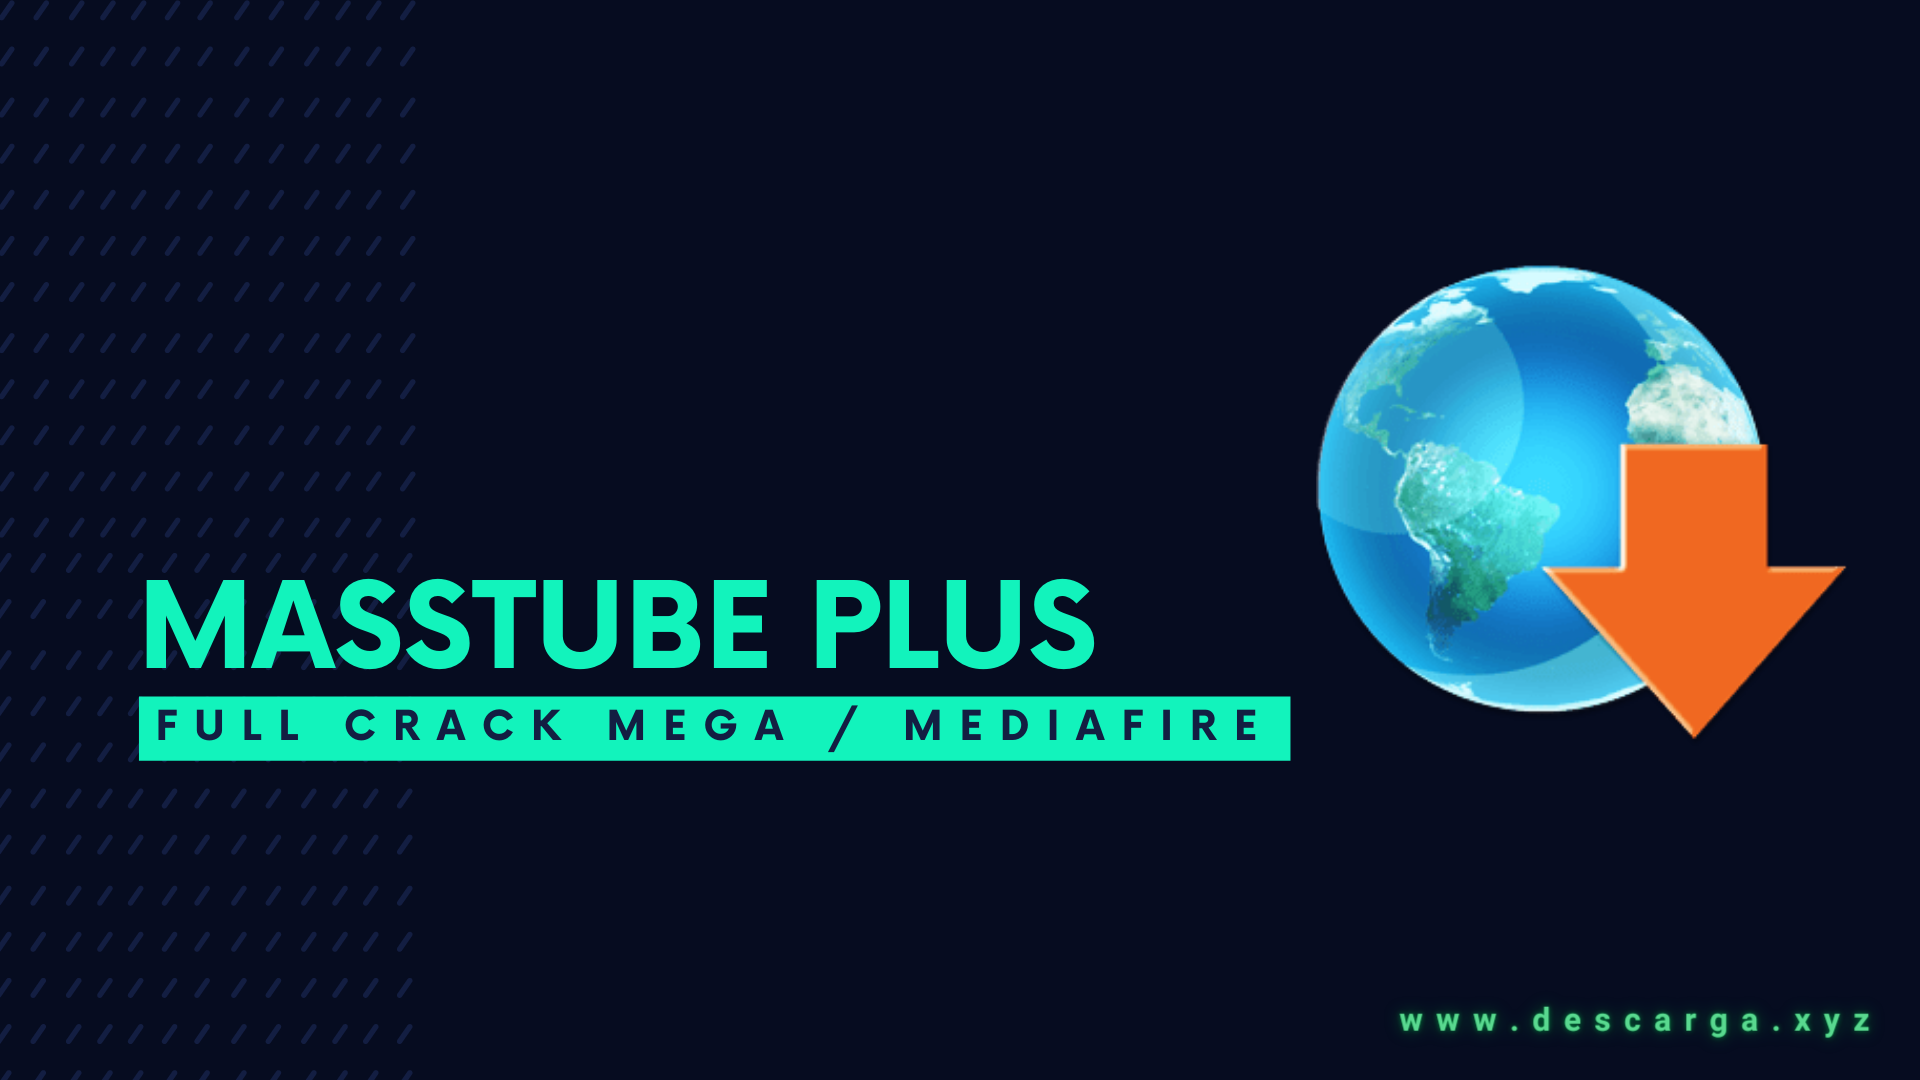 MassTube Plus Full Descargar Gratis por Mega